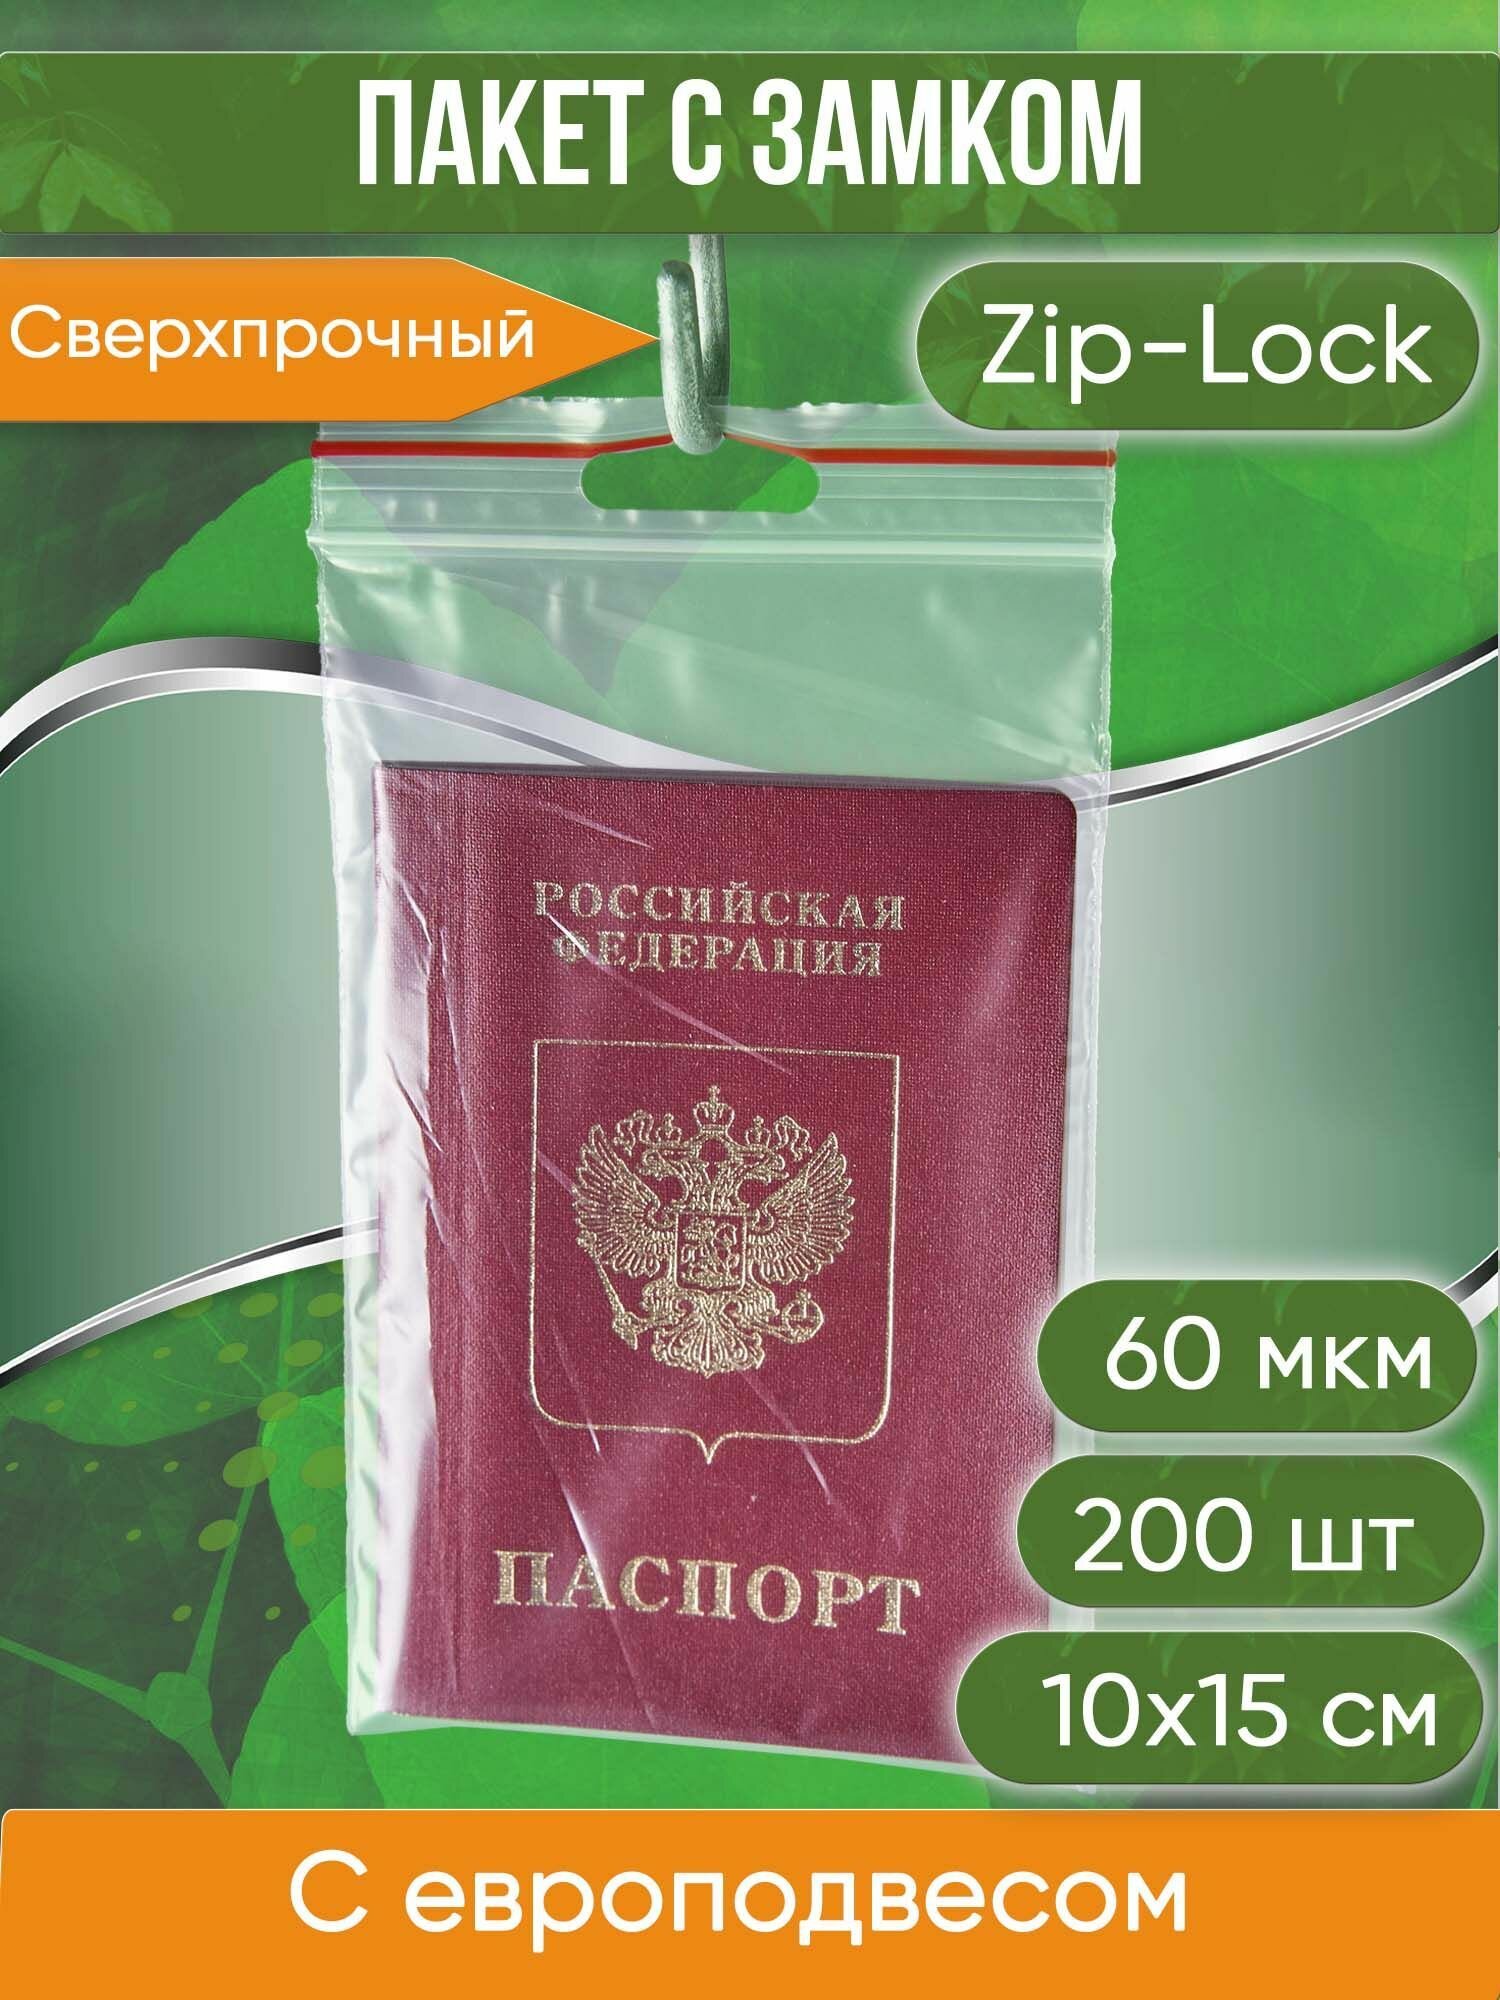 Пакет с замком Zip-Lock (Зип лок), с европодвесом, сверхпрочный, 10х15 см, 60 мкм, 200 шт. - фотография № 1